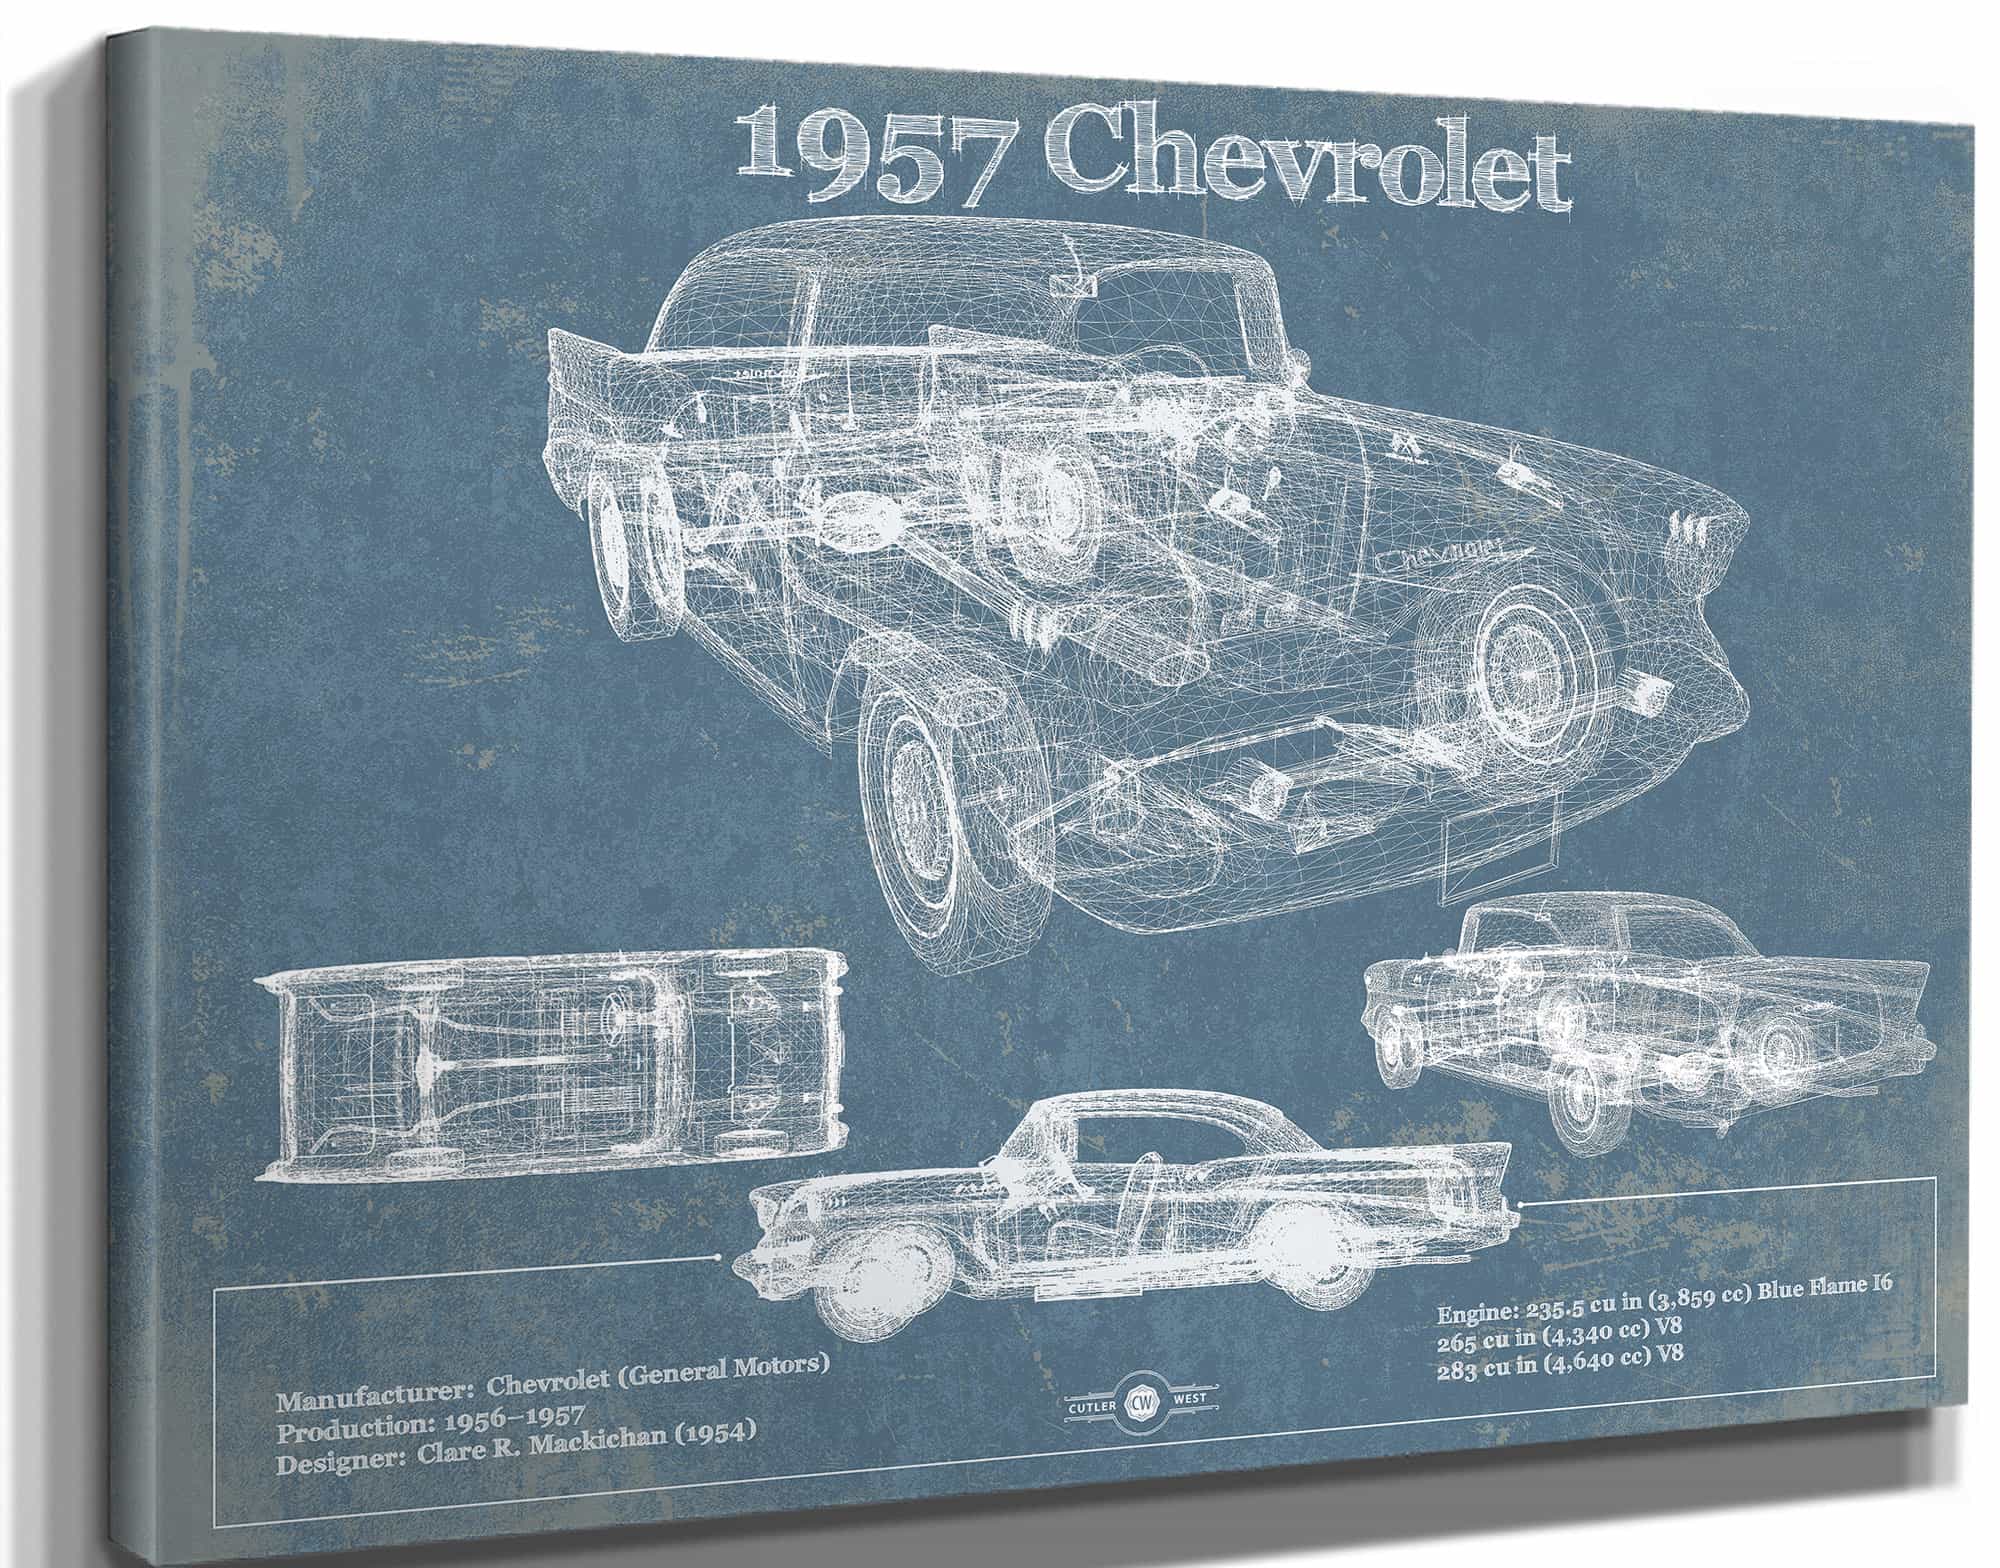 1957 Chevrolet Bel Air Sport Coupé Blueprint Vintage Auto Print